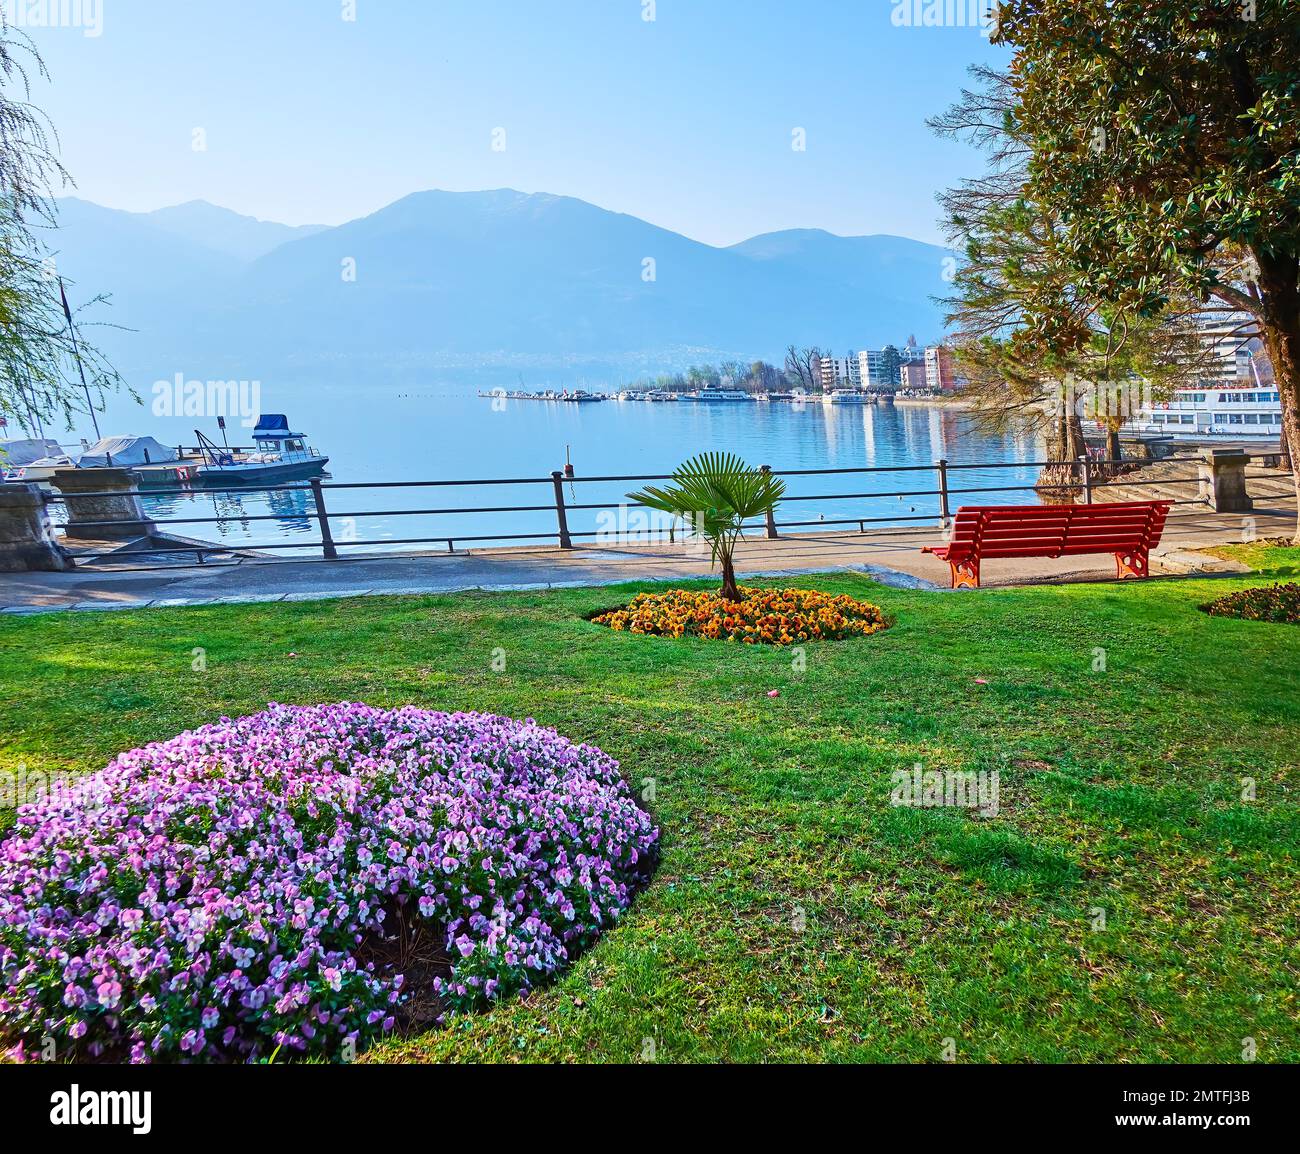 Terraplén del lago Maggiore con un hermoso parque, decorado con macizos de flores de colores de pansy y petunia, Locarno, Suiza Foto de stock